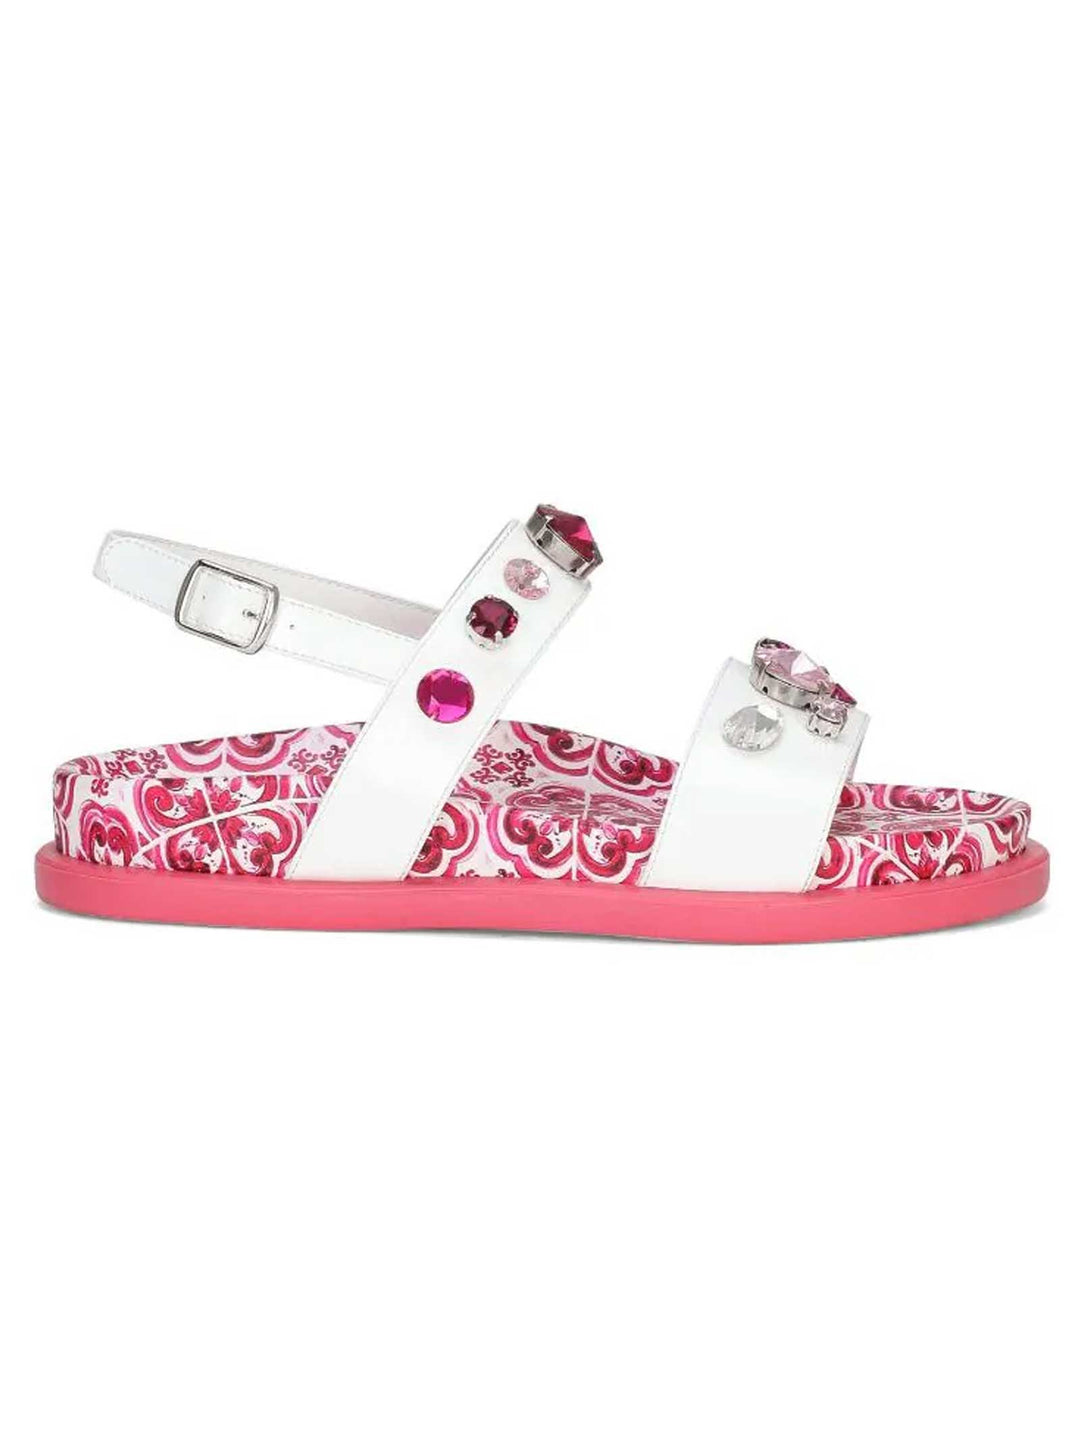 Sandalo bianco e rosa bambina con applicazioni e stampa maiolica